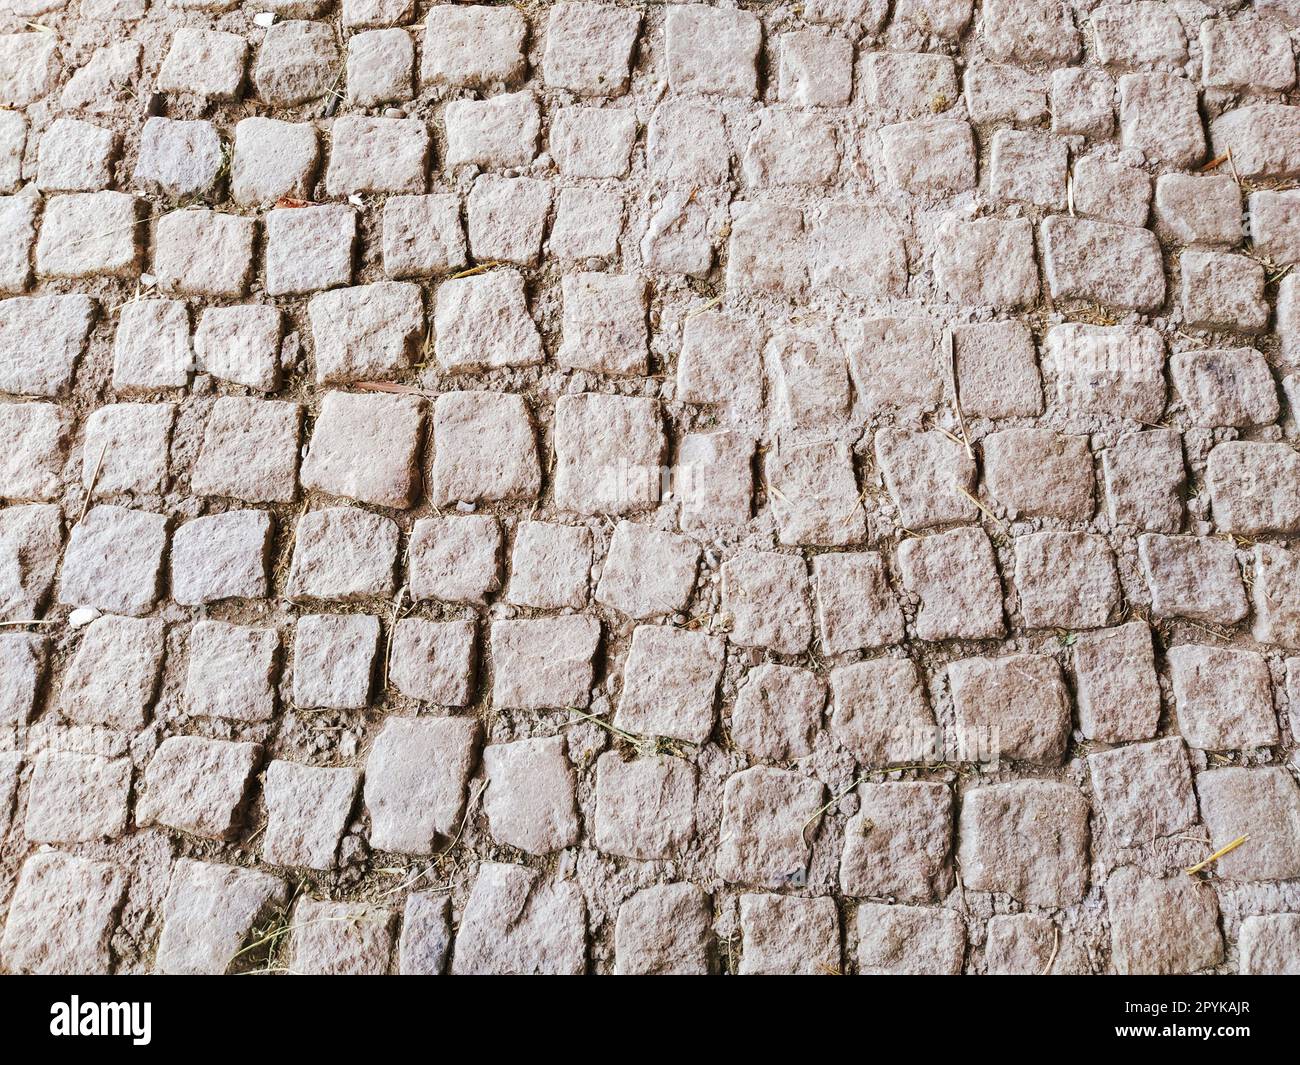 pavimentazione pavimentata con pietre naturali irregolari. Tra i ciottoli schiacciati ci sono piccoli ciottoli, terra, sabbia, erba. Piazza nella città vecchia europea. Foto Stock